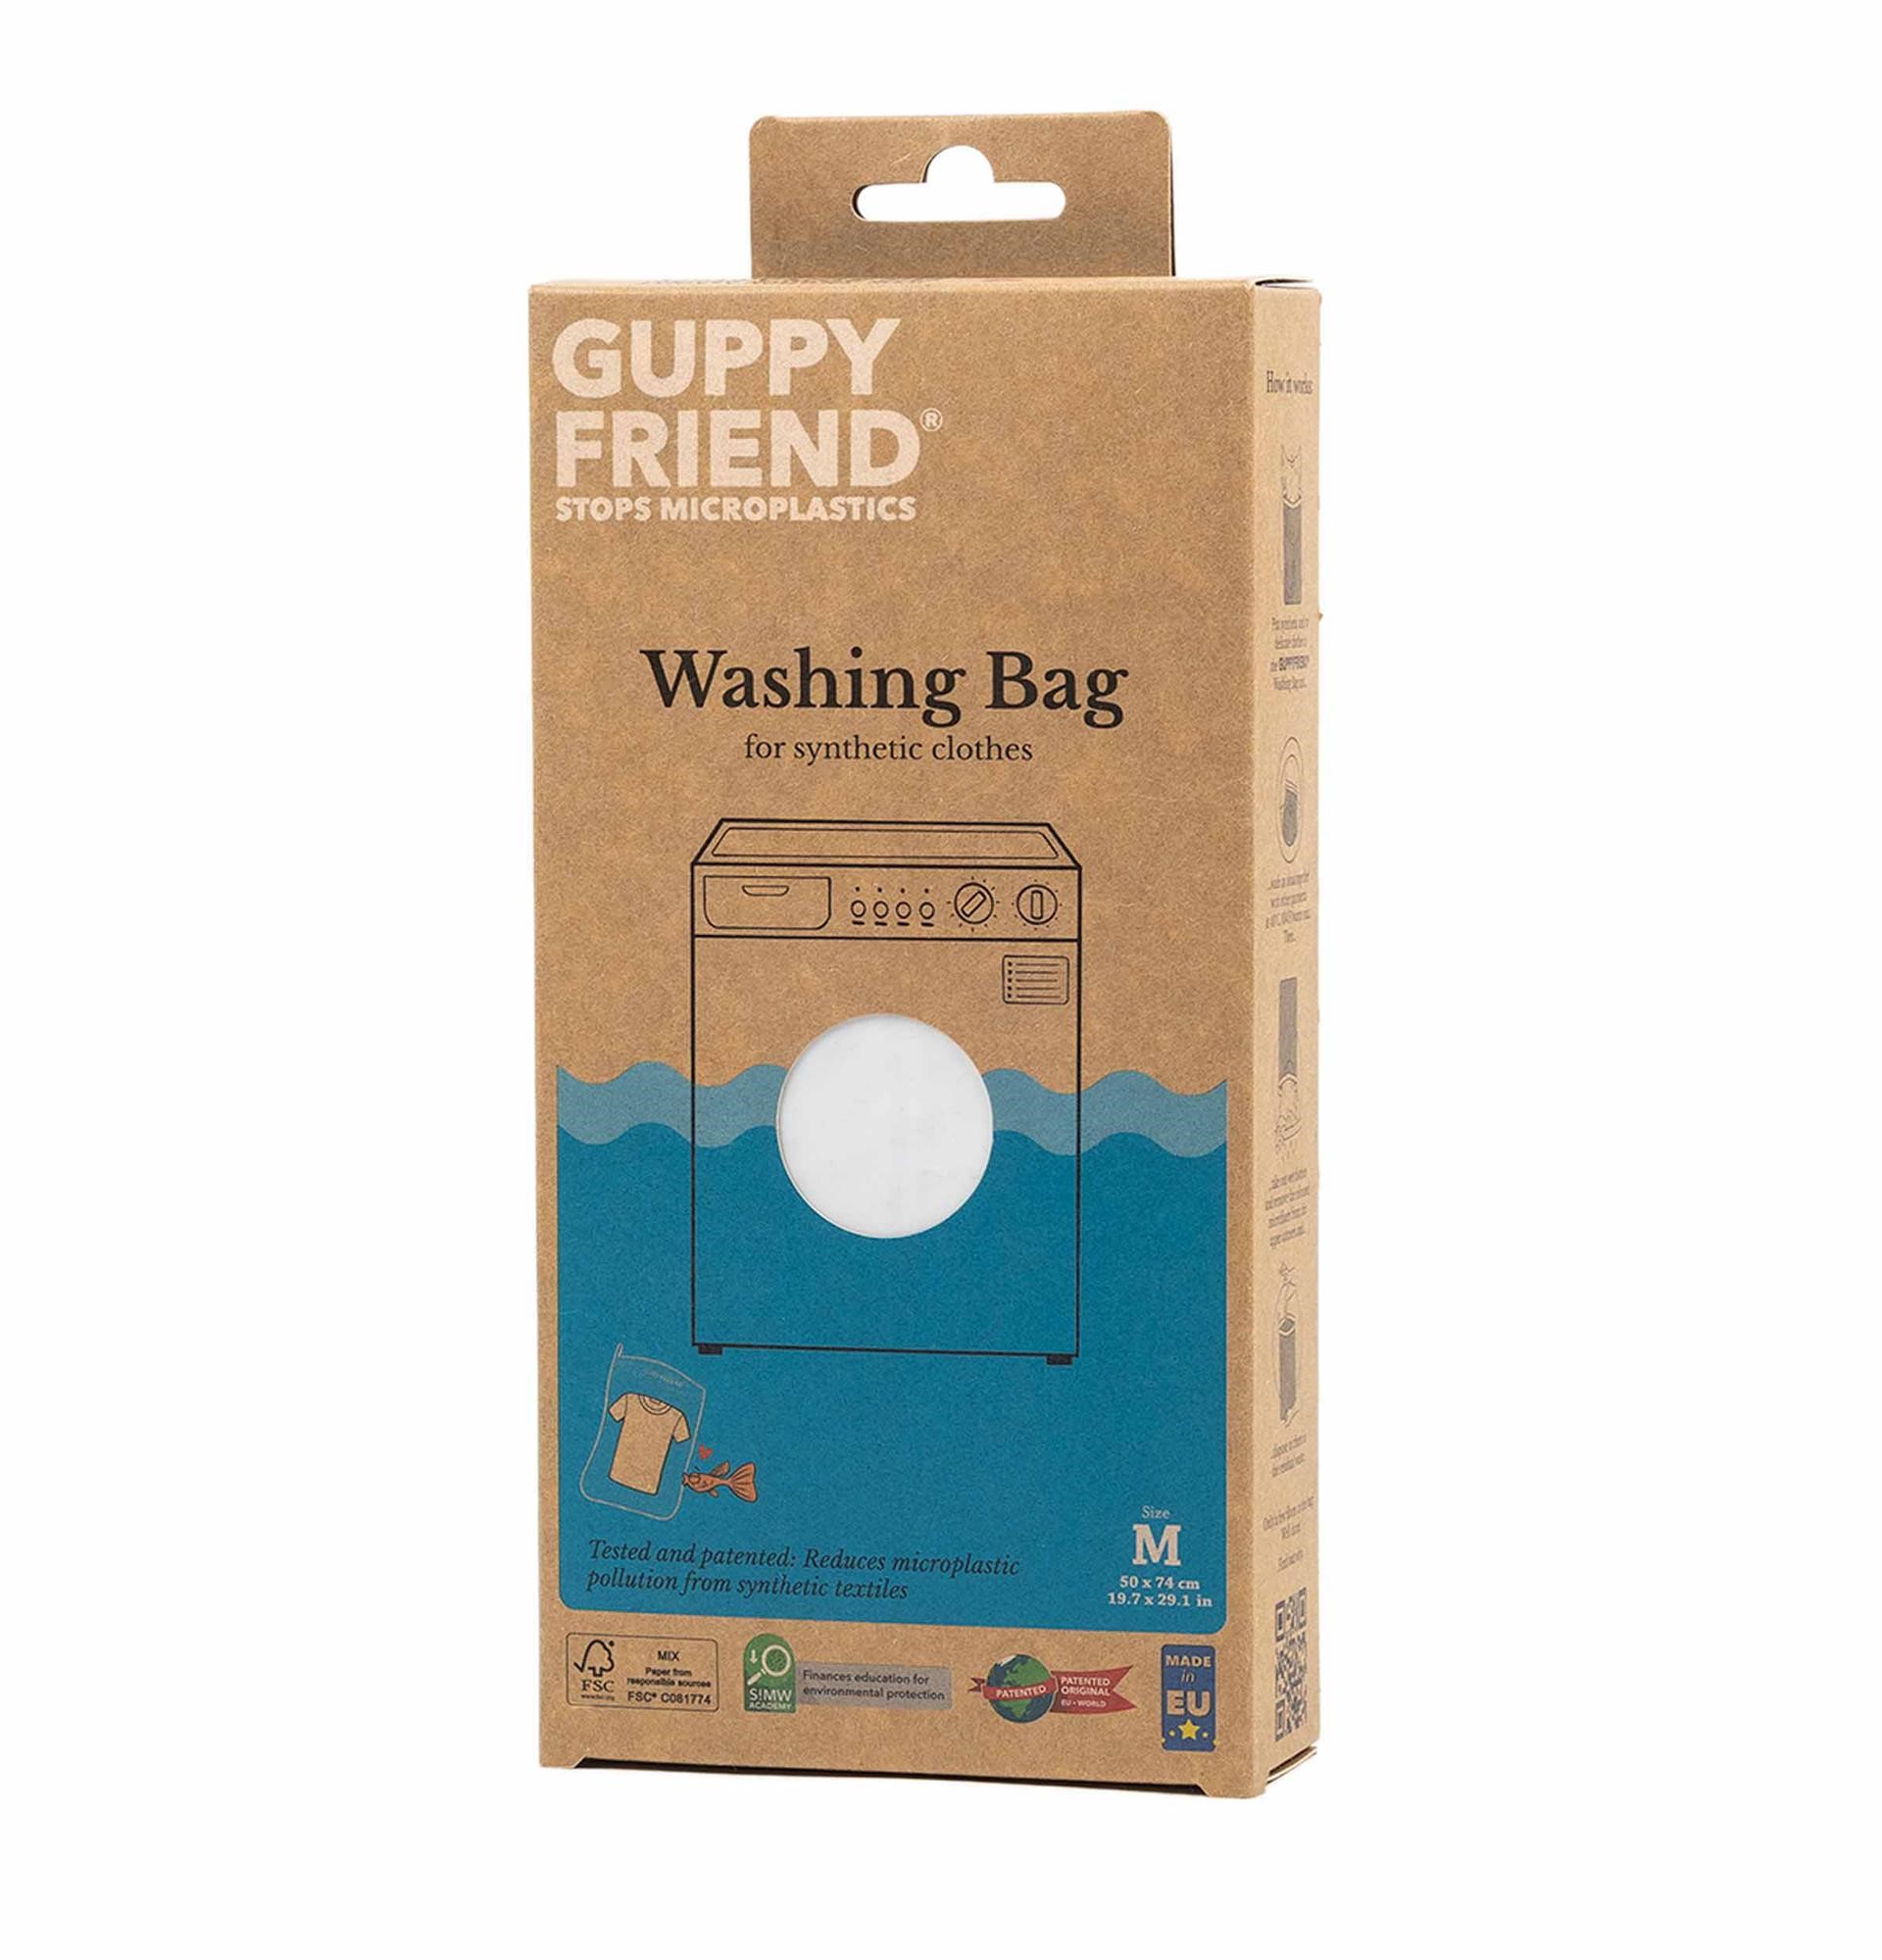 Gupptfriend wash bag in its box